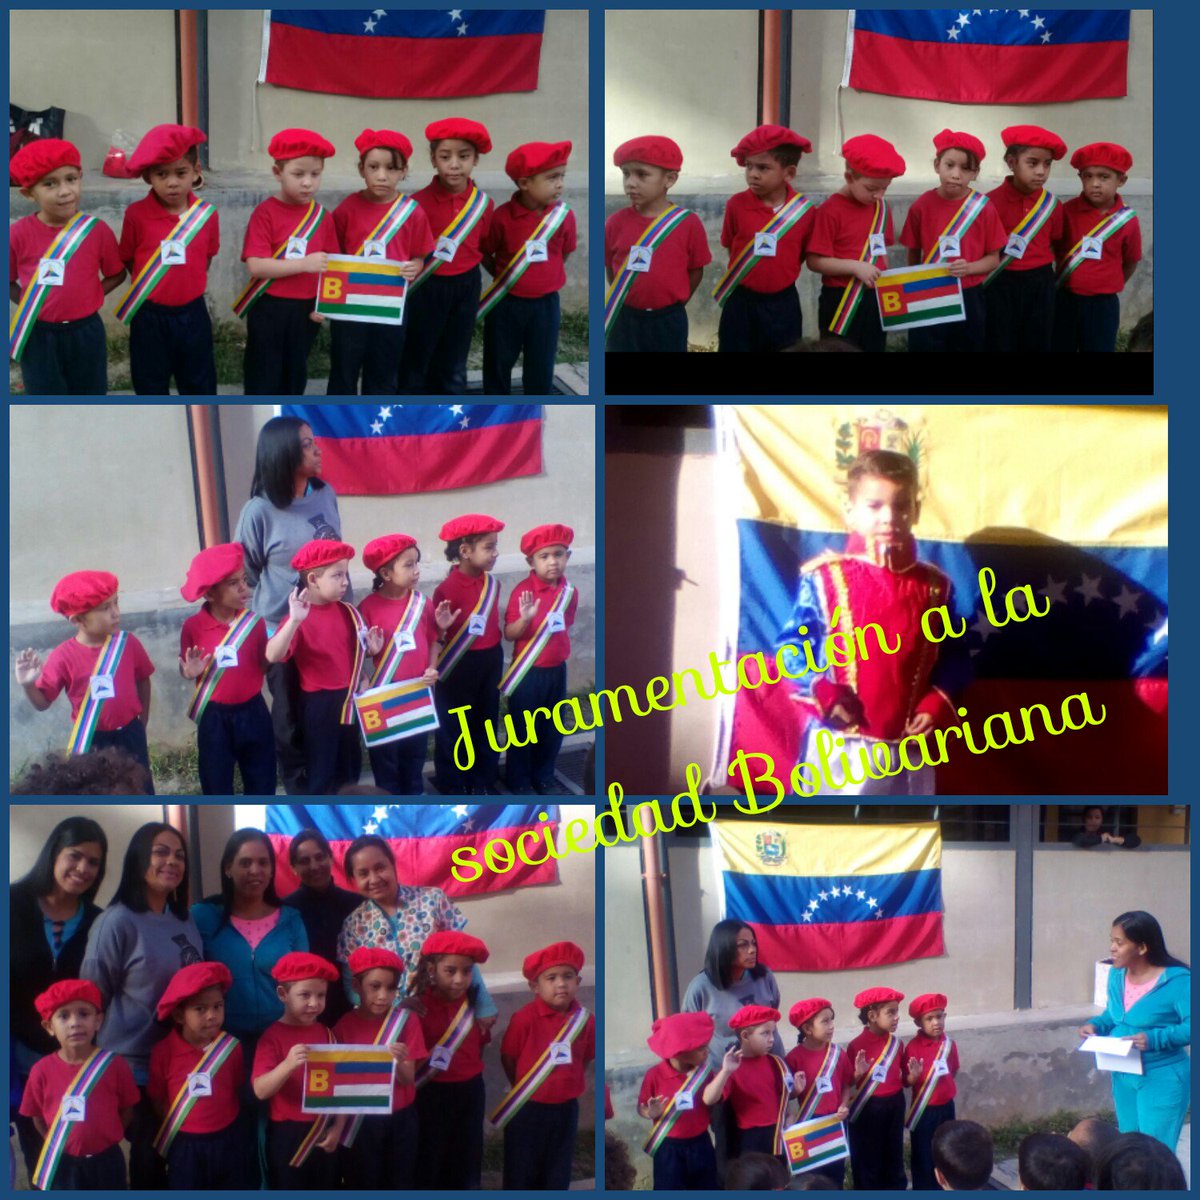 Juramentación de la Sociedad Bolivariana del Centro de Educación Inicial Simoncito'Sueños de Hugo Chávez'@circuitofuertetiuna @jcduben @CEINSHugoChavez @JauaMiranda @MppeDgcd